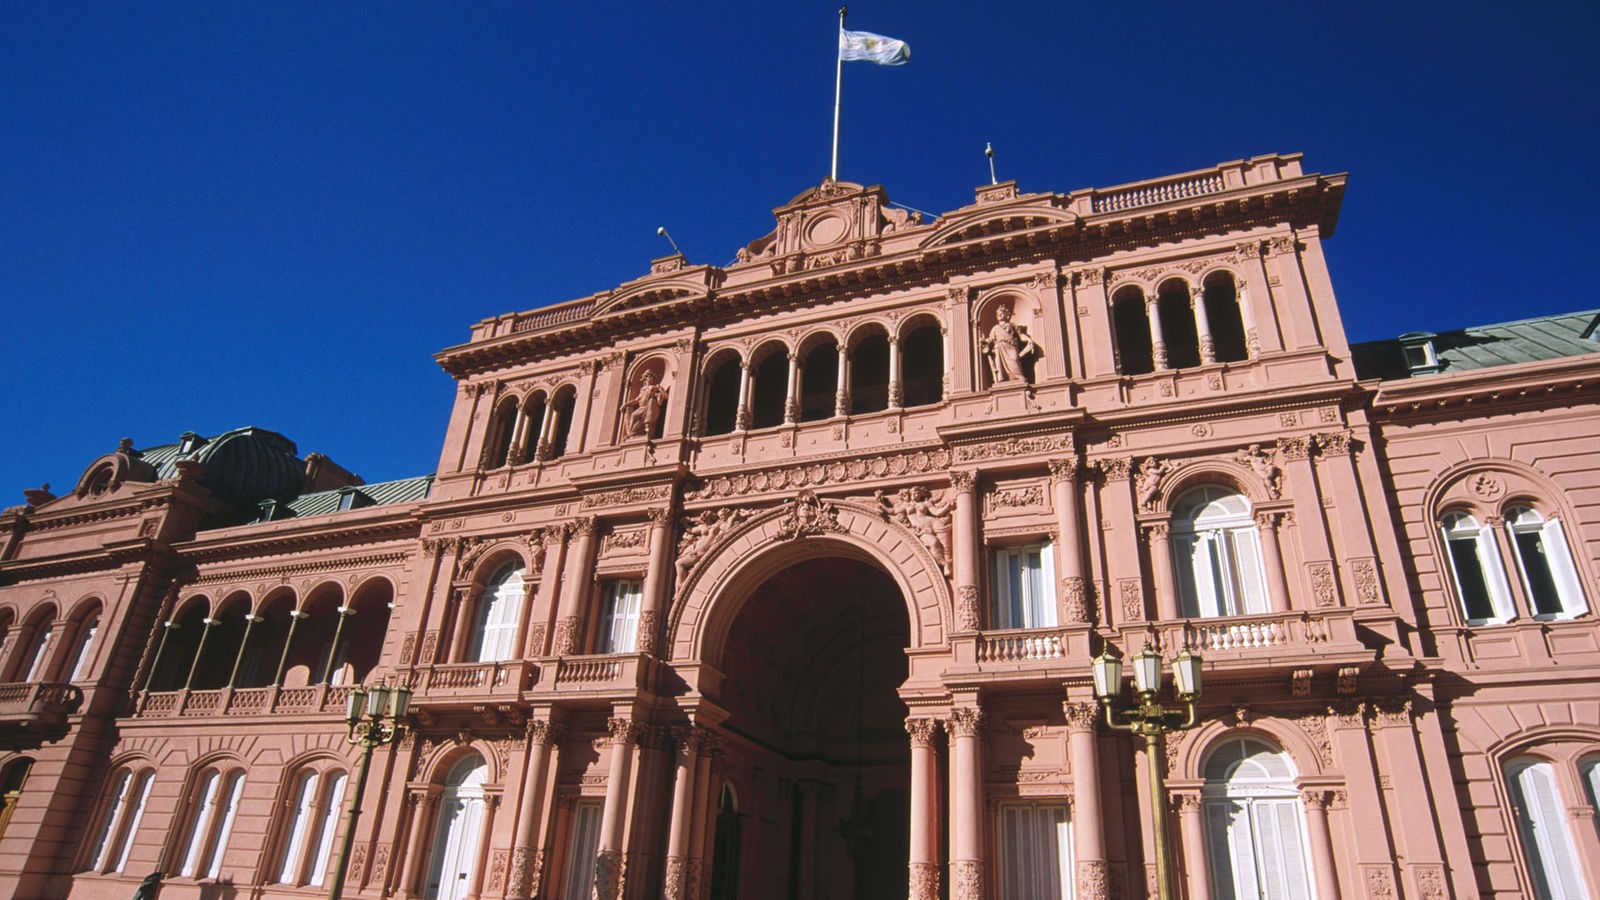 Frontalansicht des argentinischen Präsidentenpalastes Casa Rosada an der Plaza de Mayo